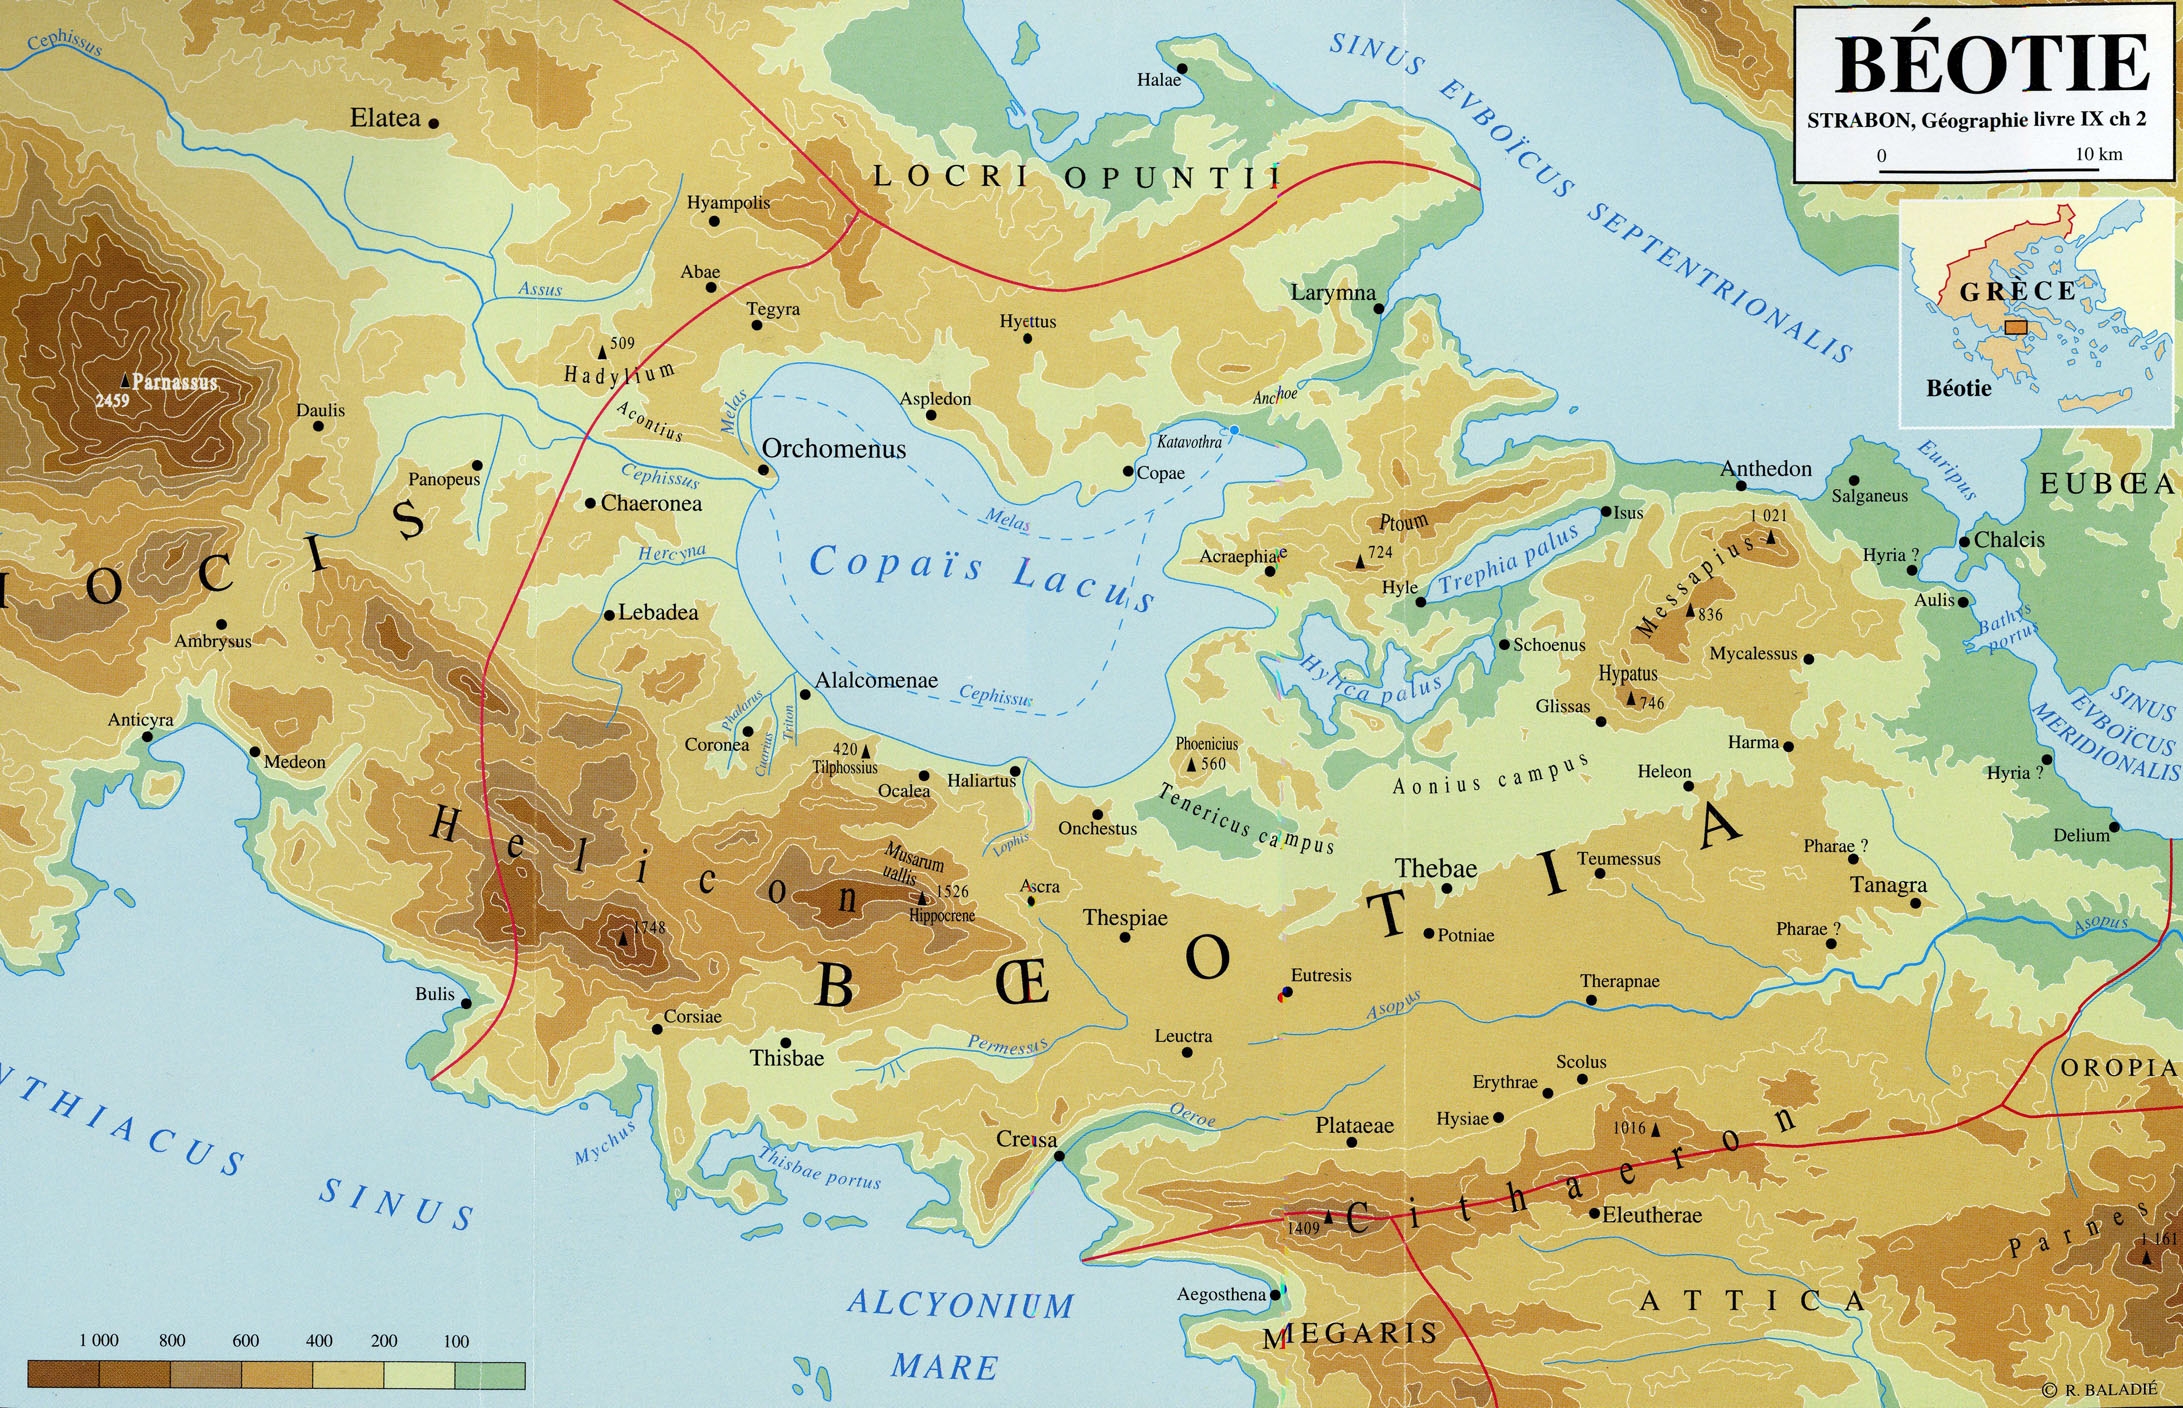 Grèce carte de la Béotie selon Strabon